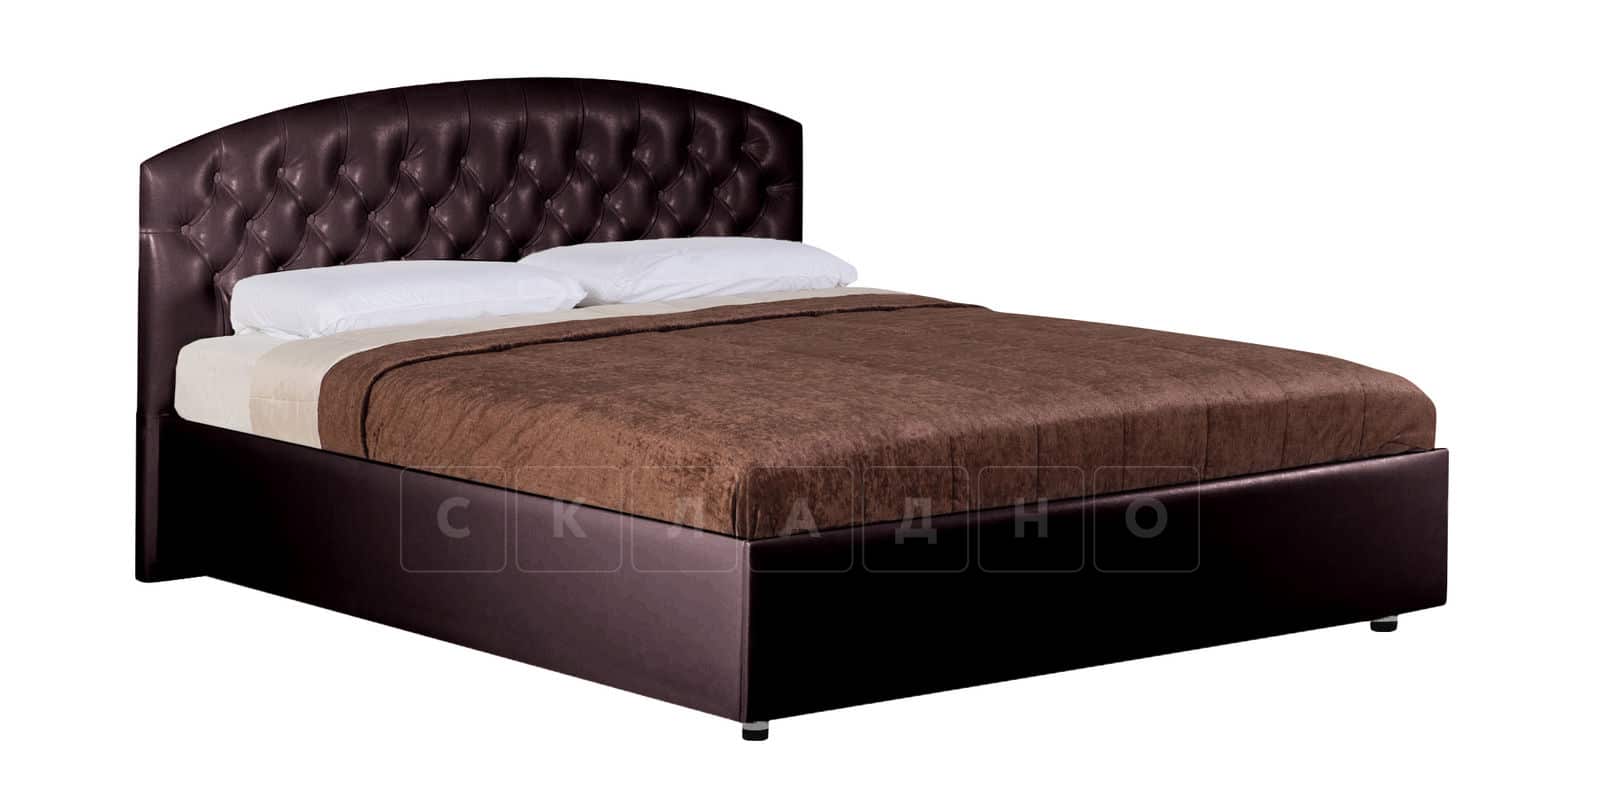 Мягкая кровать Малибу 160см экокожа шоколадного цвета вариант 1-2 фото 2 | интернет-магазин Складно